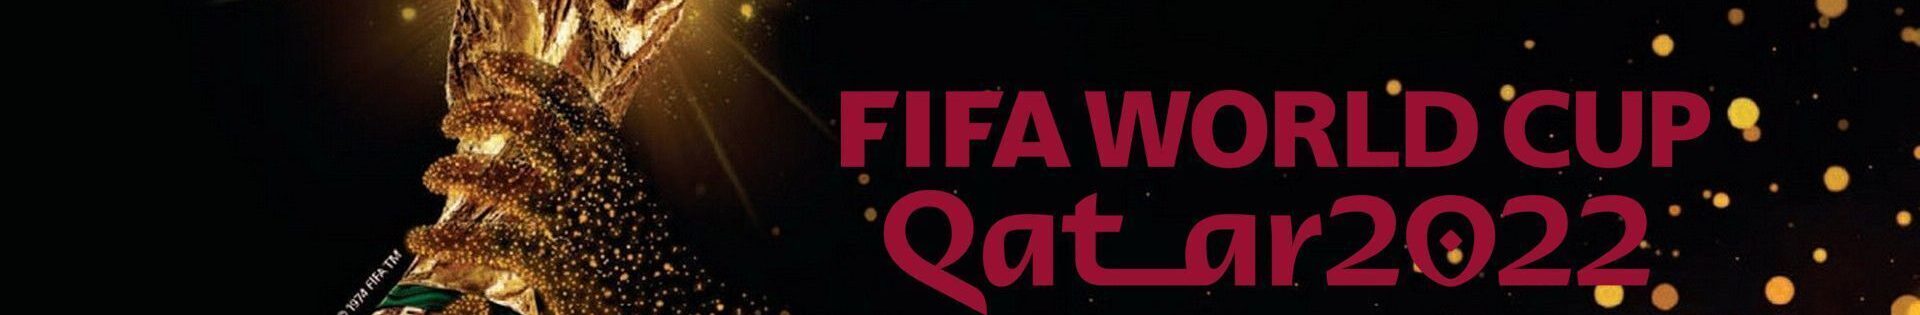 Fussballreise, Fußball Weltmeisterschaft, Perfect Tours Qatar World Cup Fussballreise Logo SW